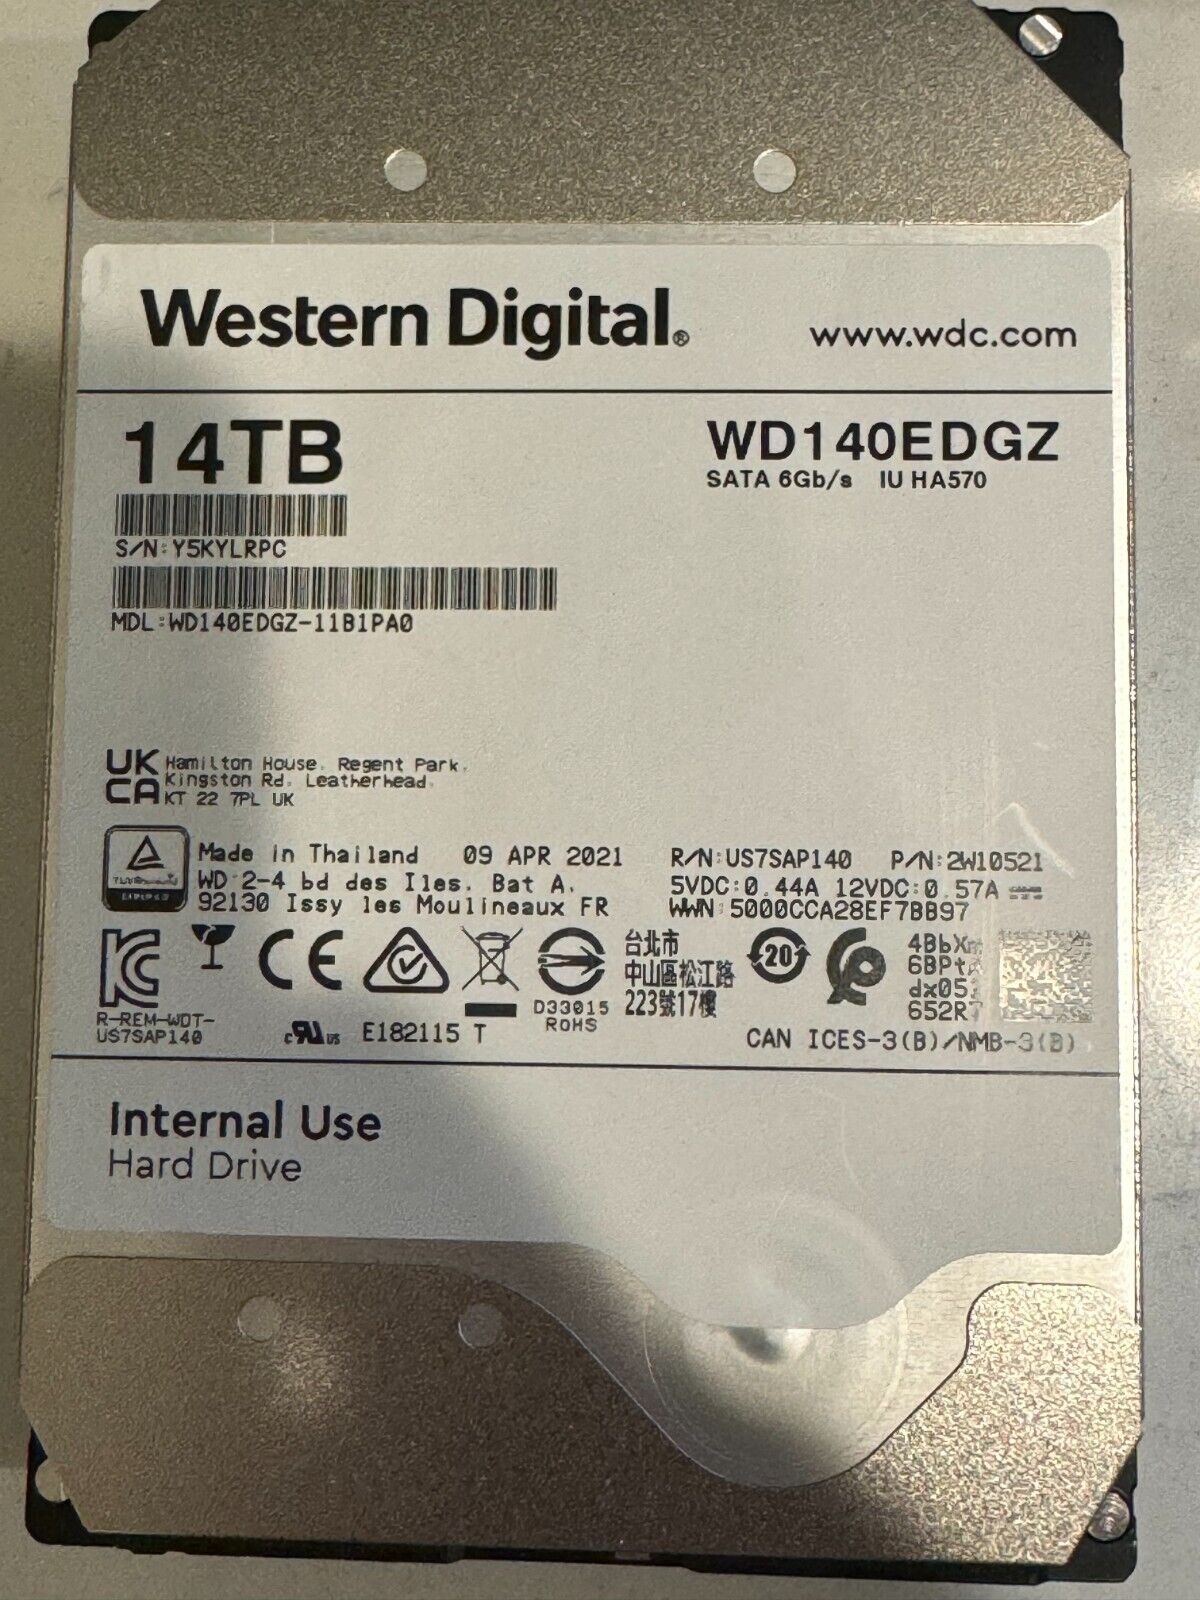 Western Digital WD140EDGZ 14 TB, Internal, 5400 RPM, 3.5 inch Hard Drive